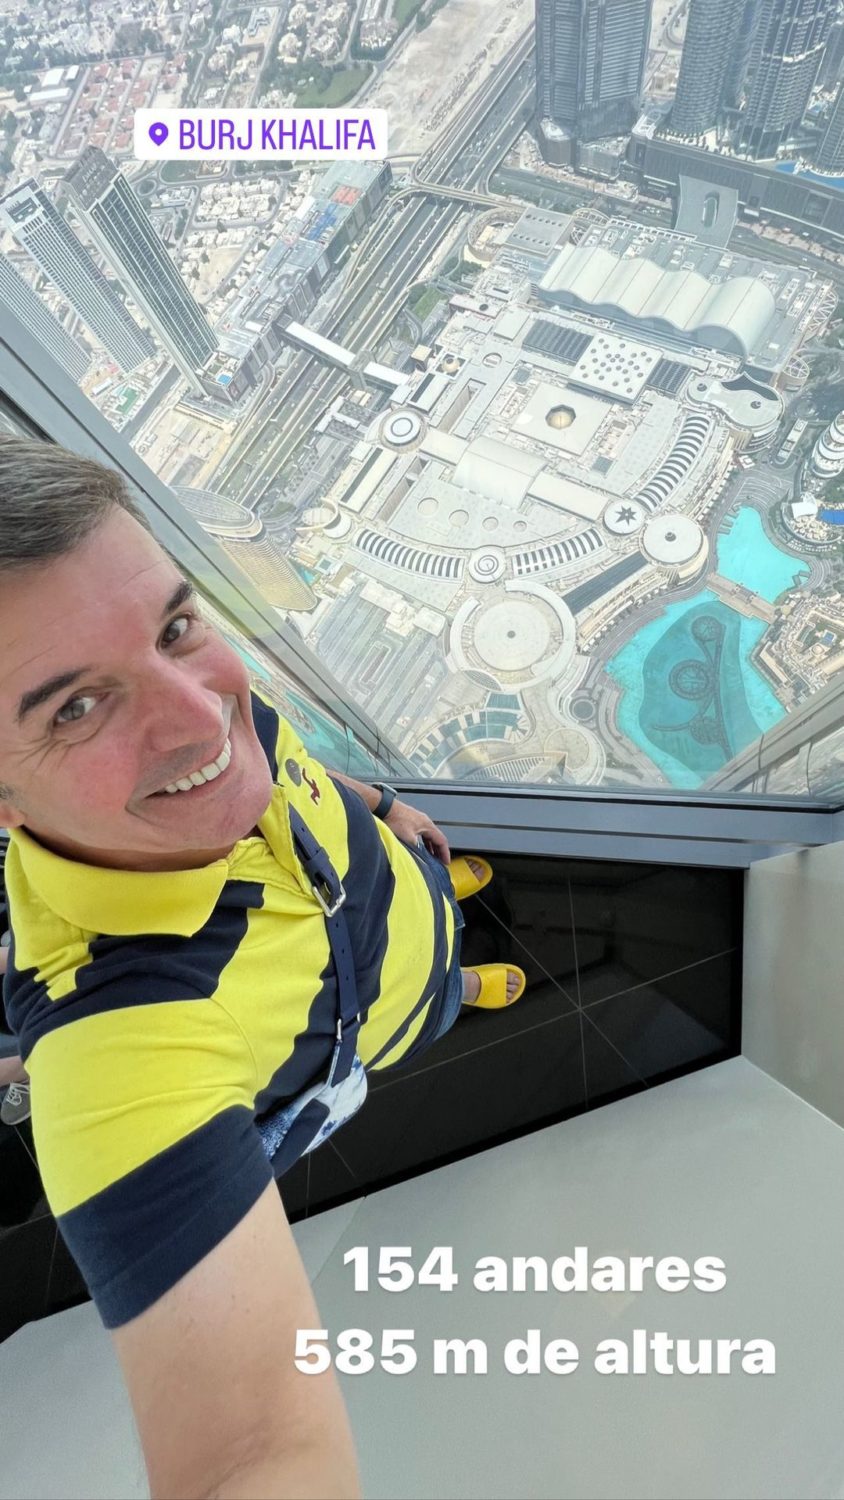 João Baião mostra-se no prédio mais alto do mundo: &#8220;585 metros de altura&#8230;&#8221;